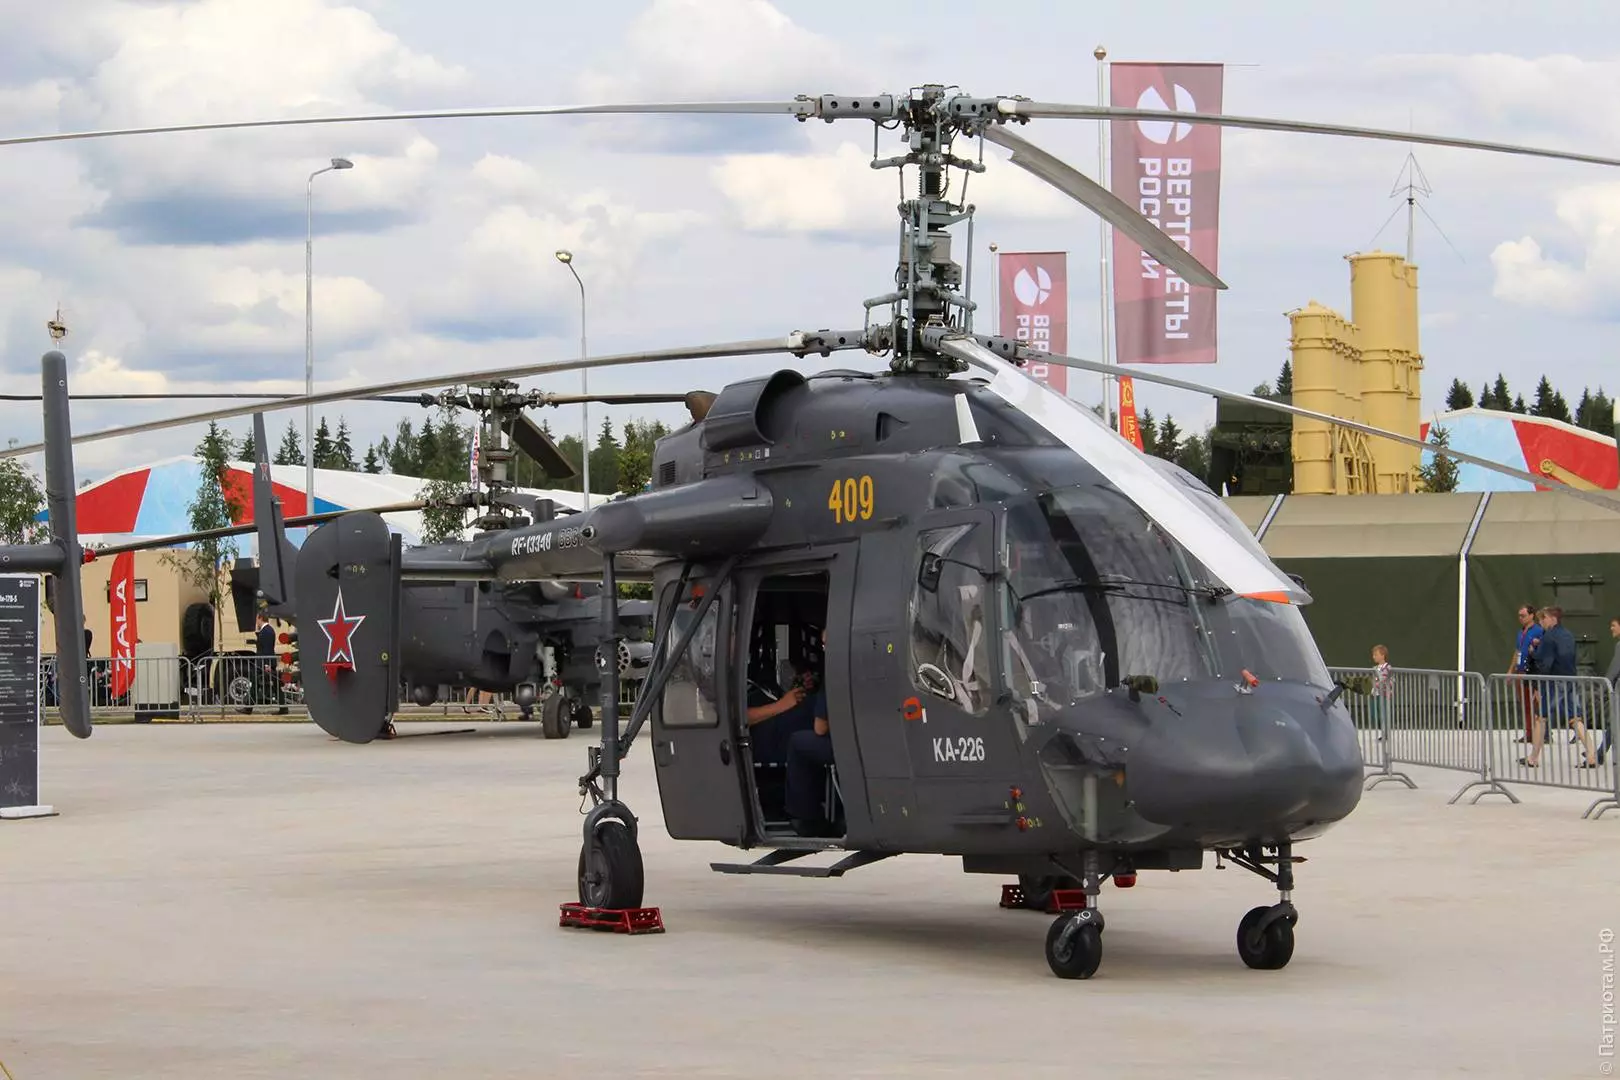 Ка-226 — многоцелевой современный вертолет